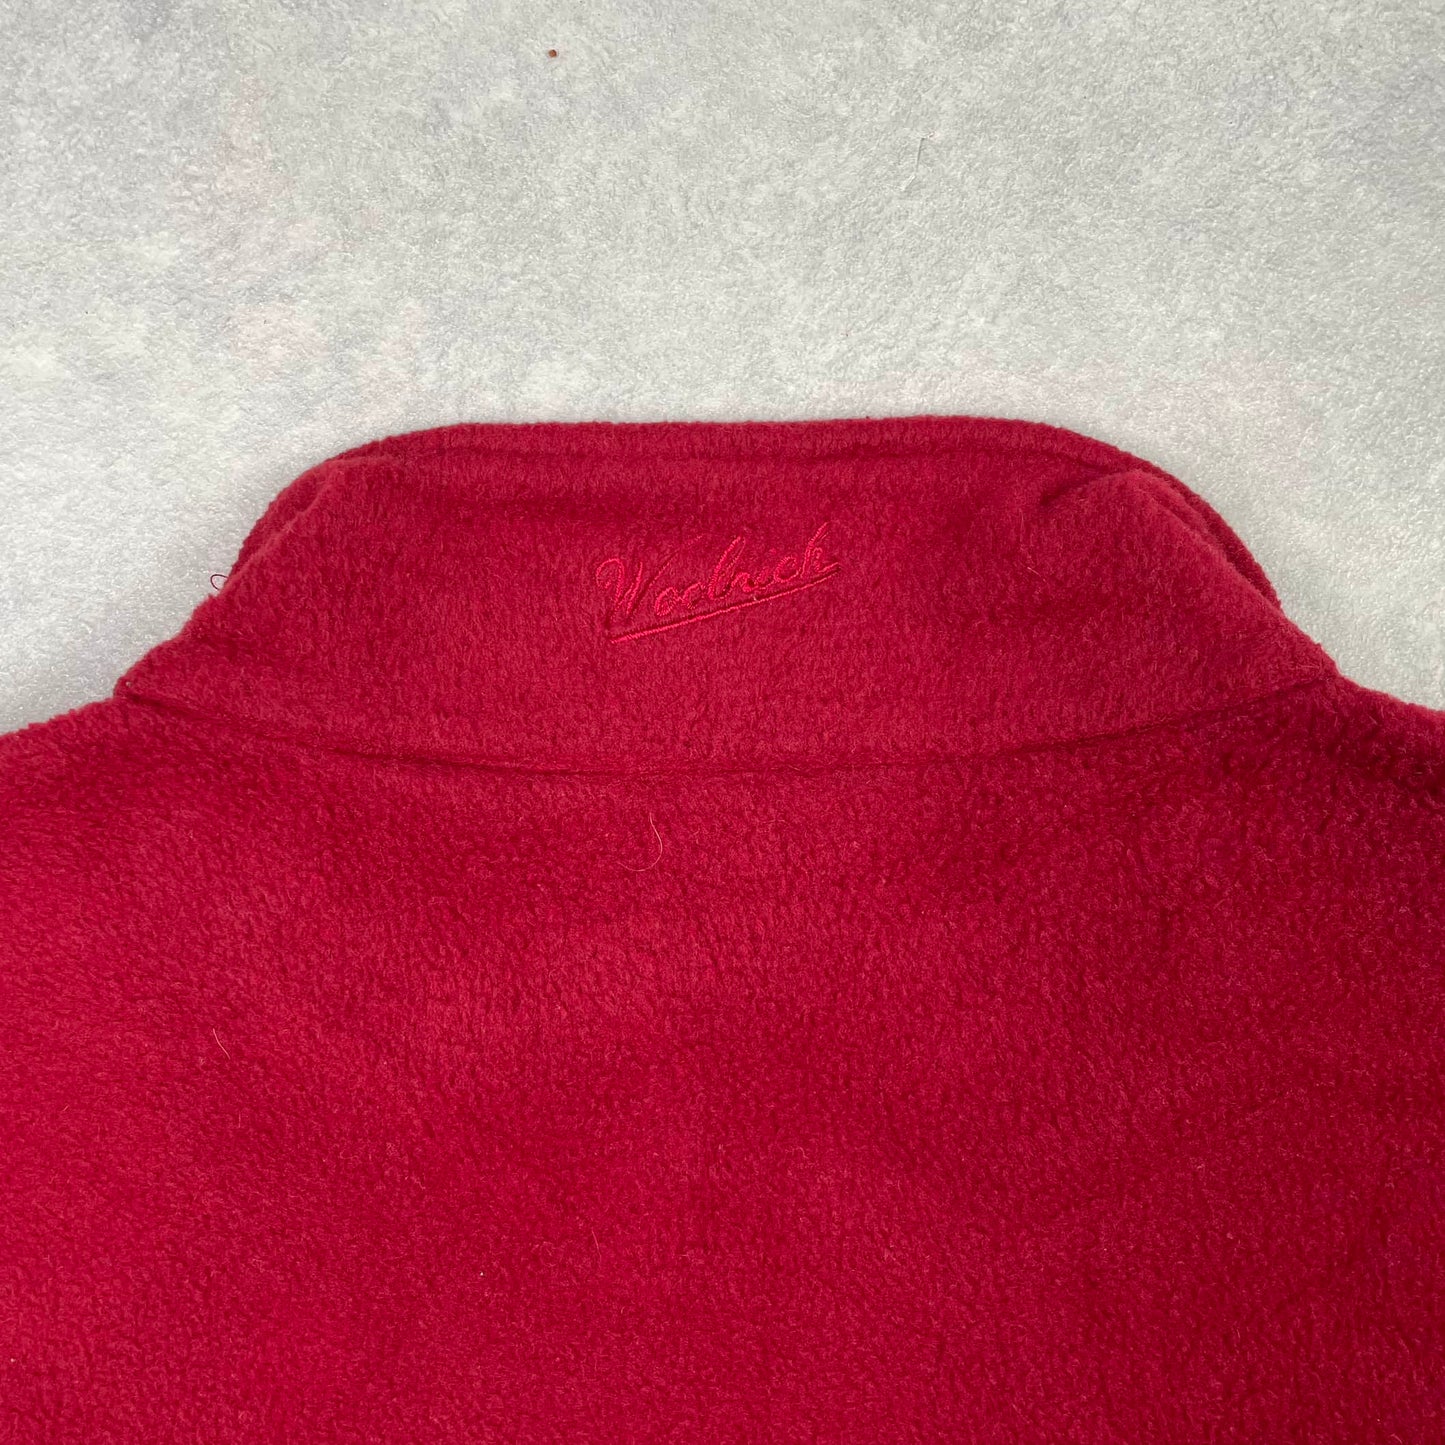 Woolrich Fleece Vest Red